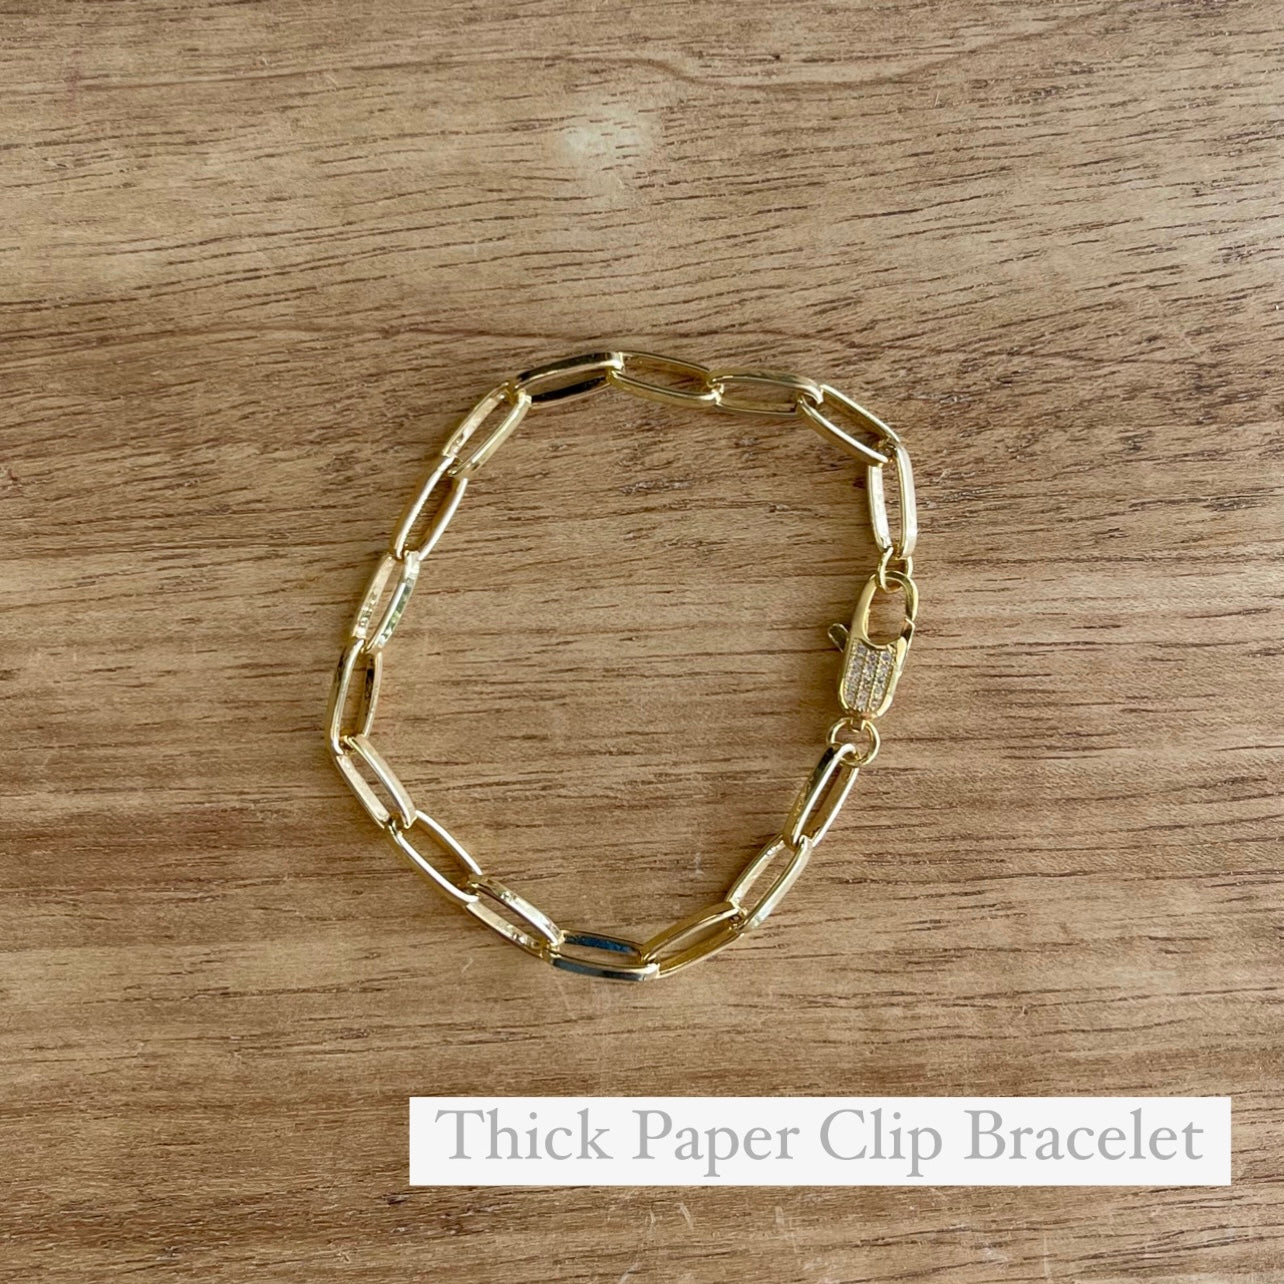 Thick Paper Clip Bracelet